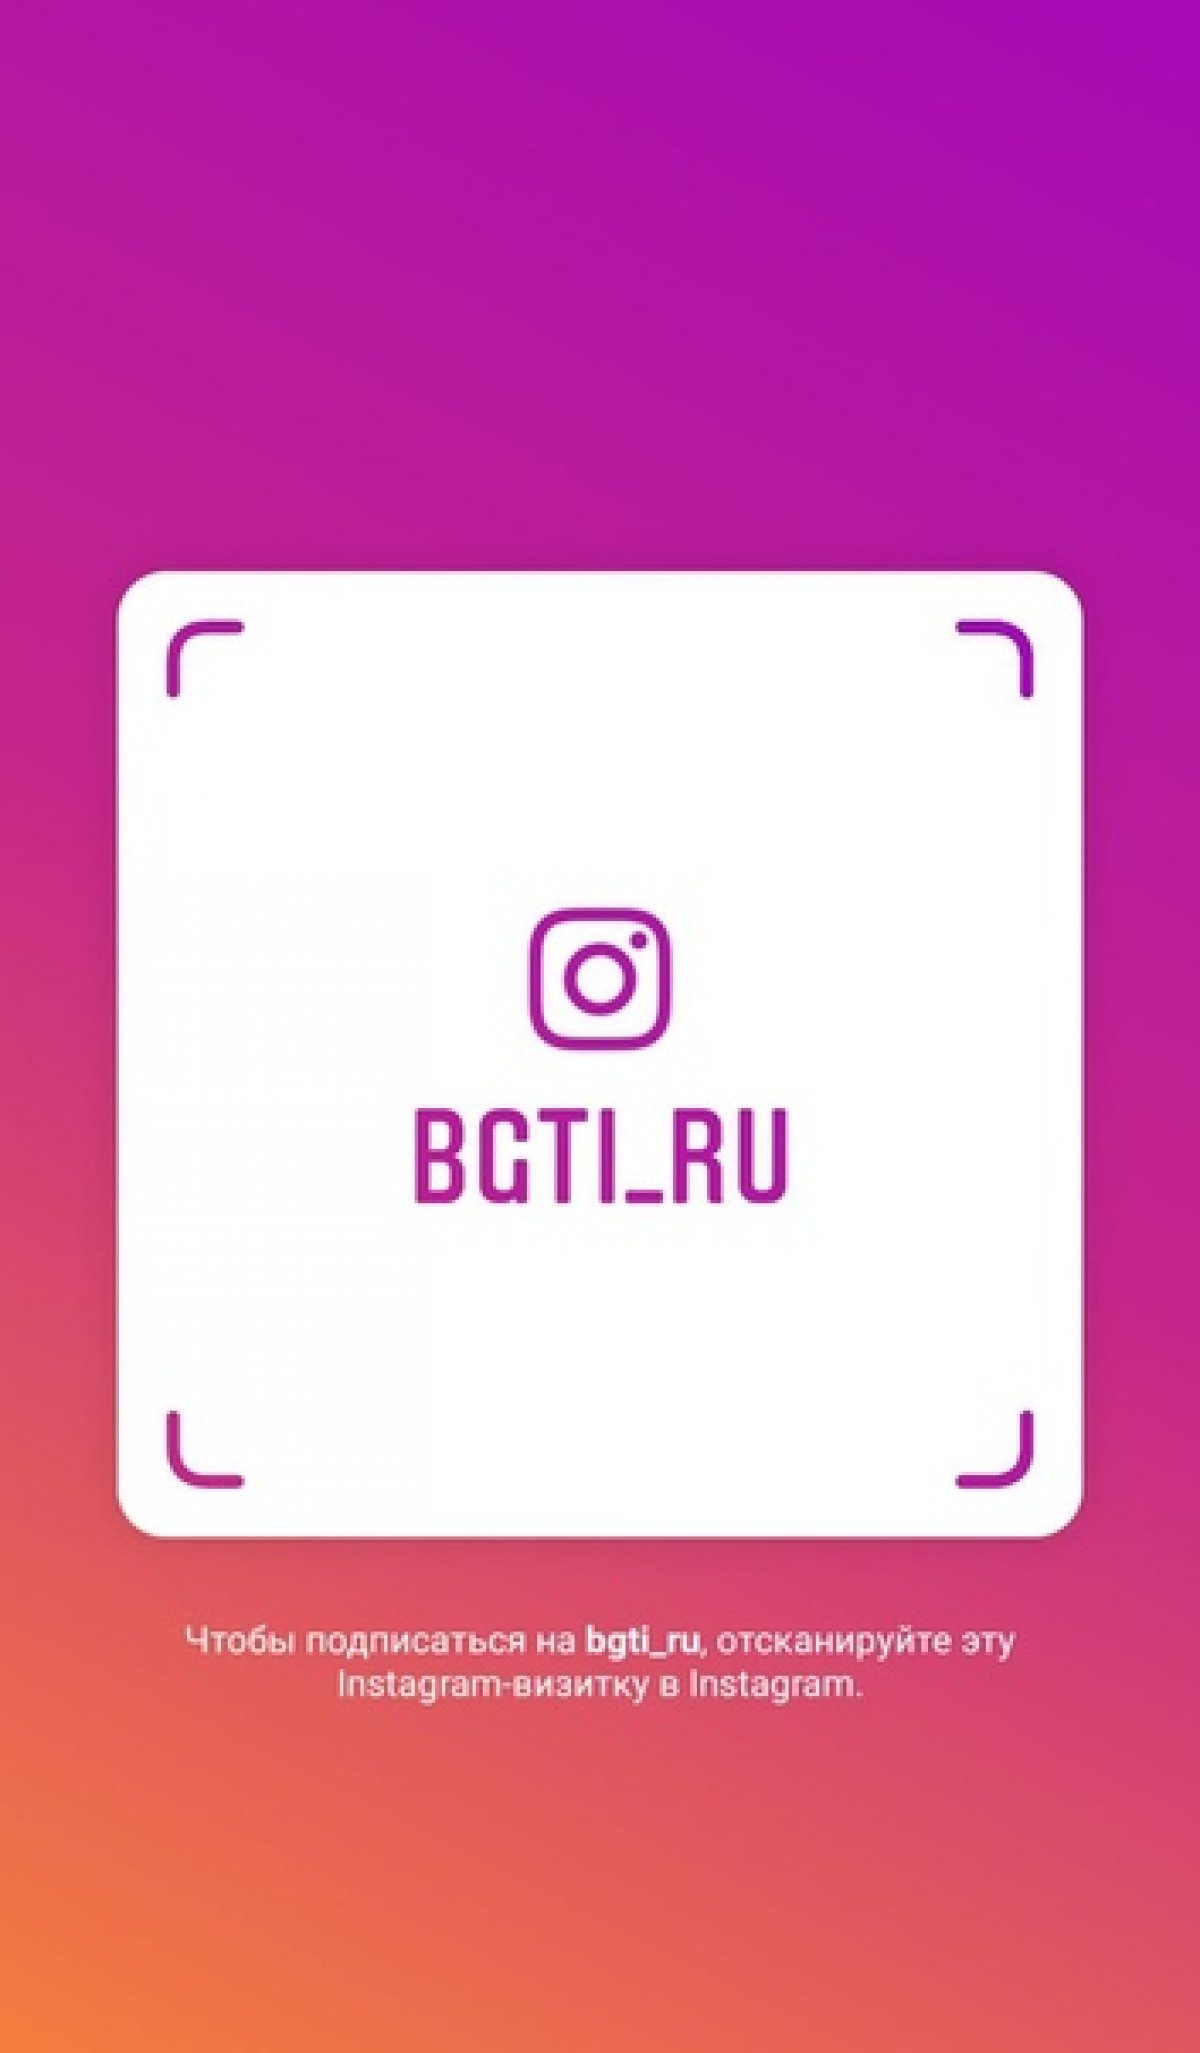 Подписывайтесь на БГТИ в Instagram! Имя пользователя: bgti_ru